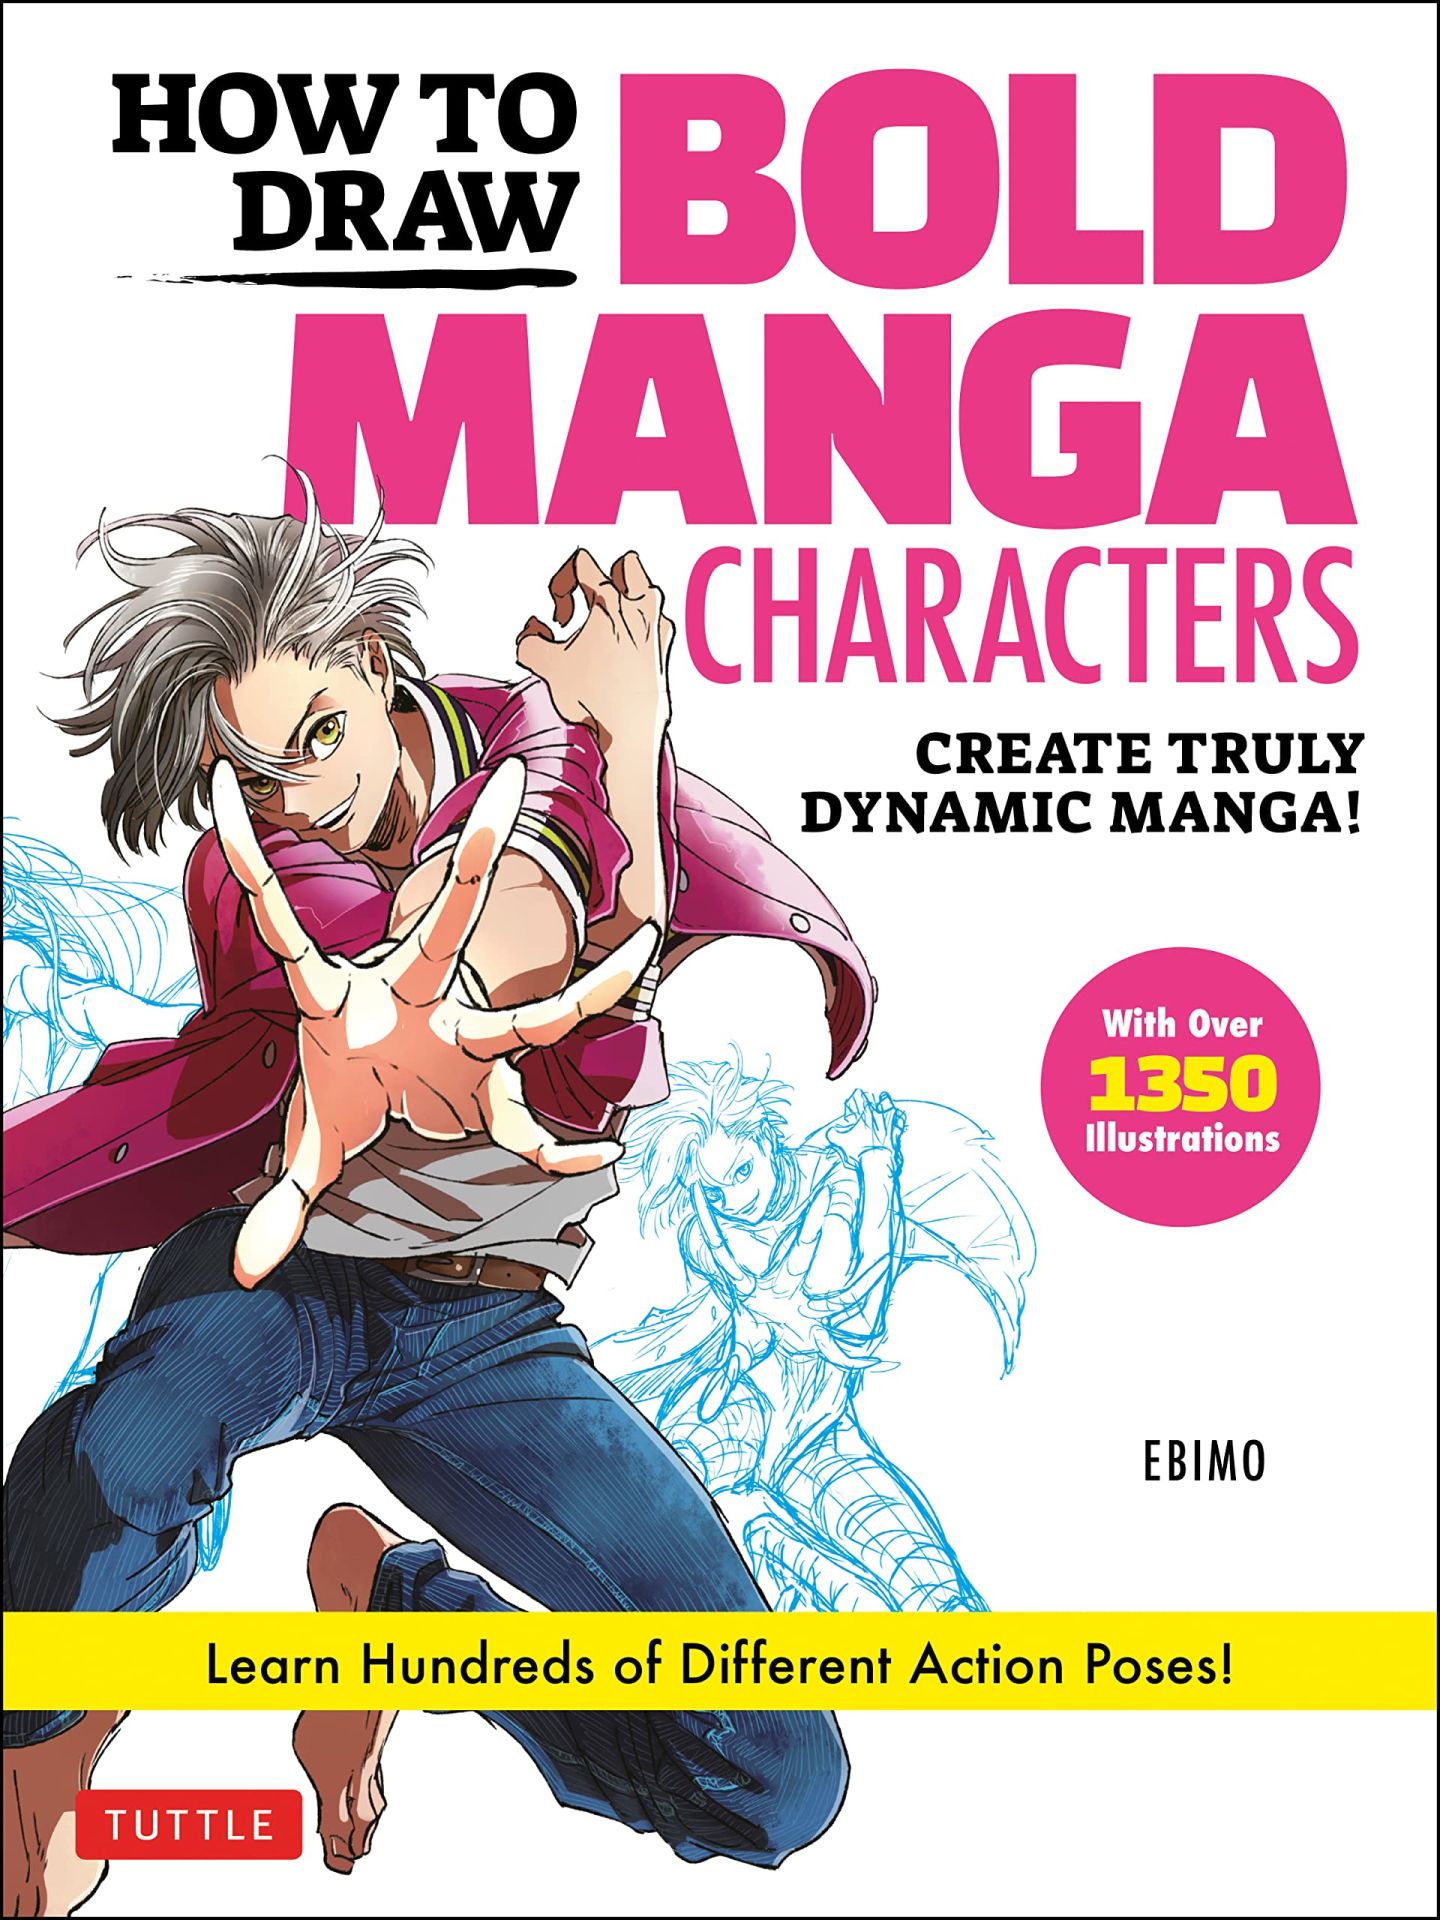 How to Draw Bold Manga Characters Create Truly Dynamic Manga! Learn